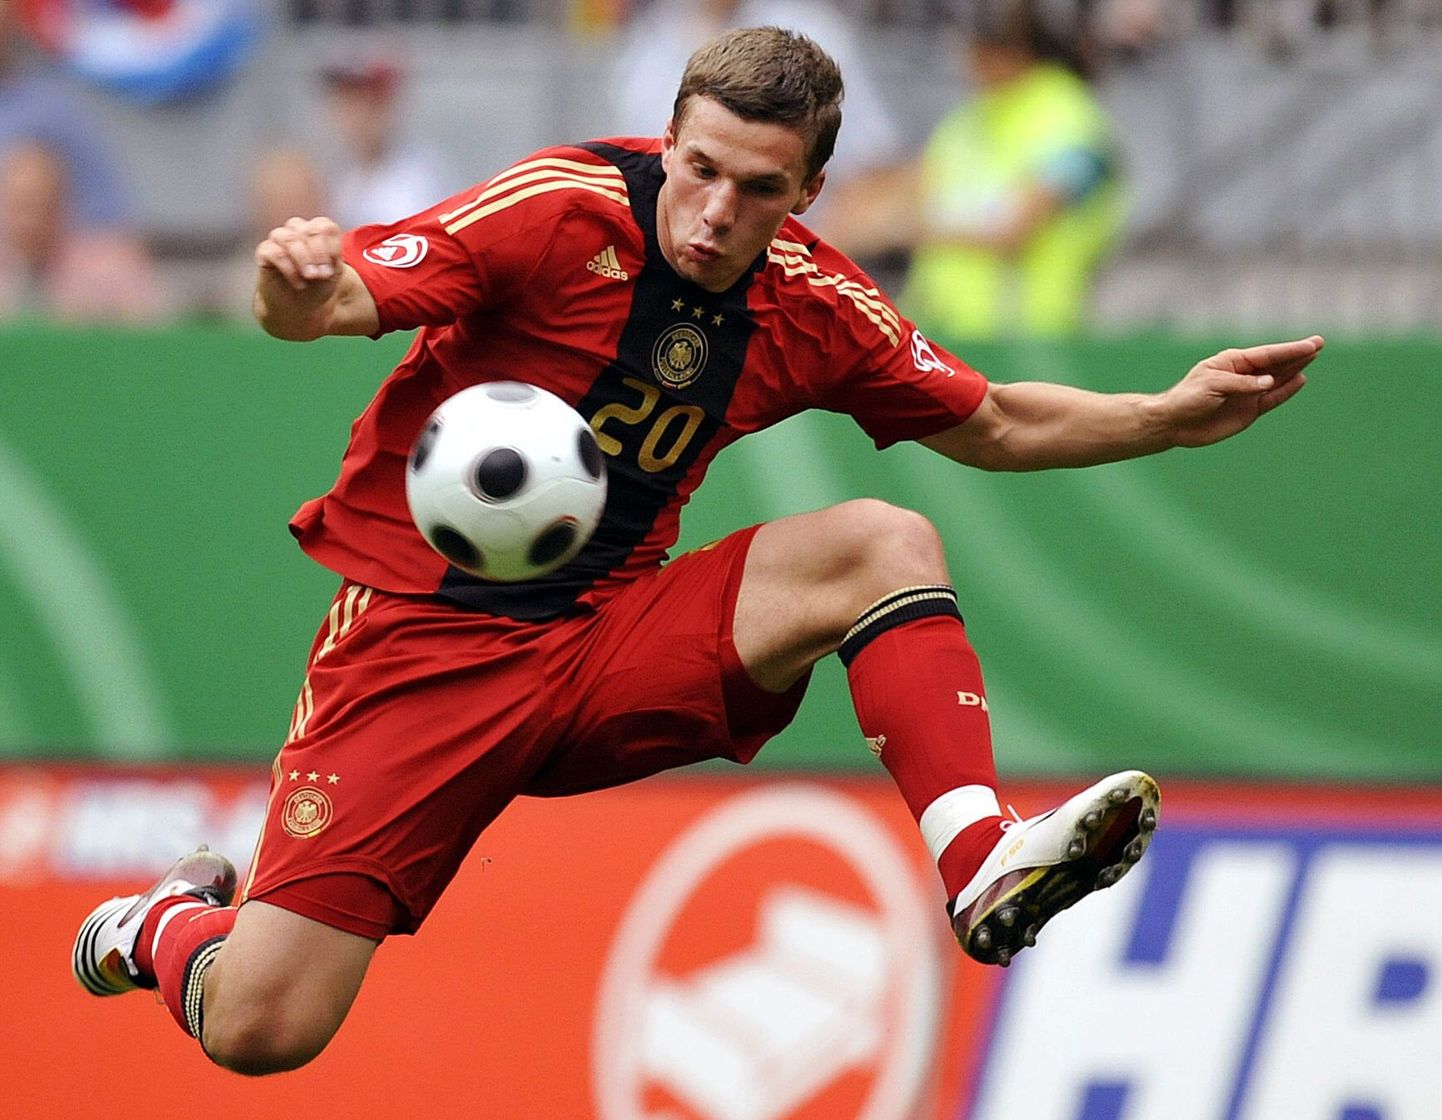 Saksamaa jalgpallikoondise ründaja Lukas Podolski